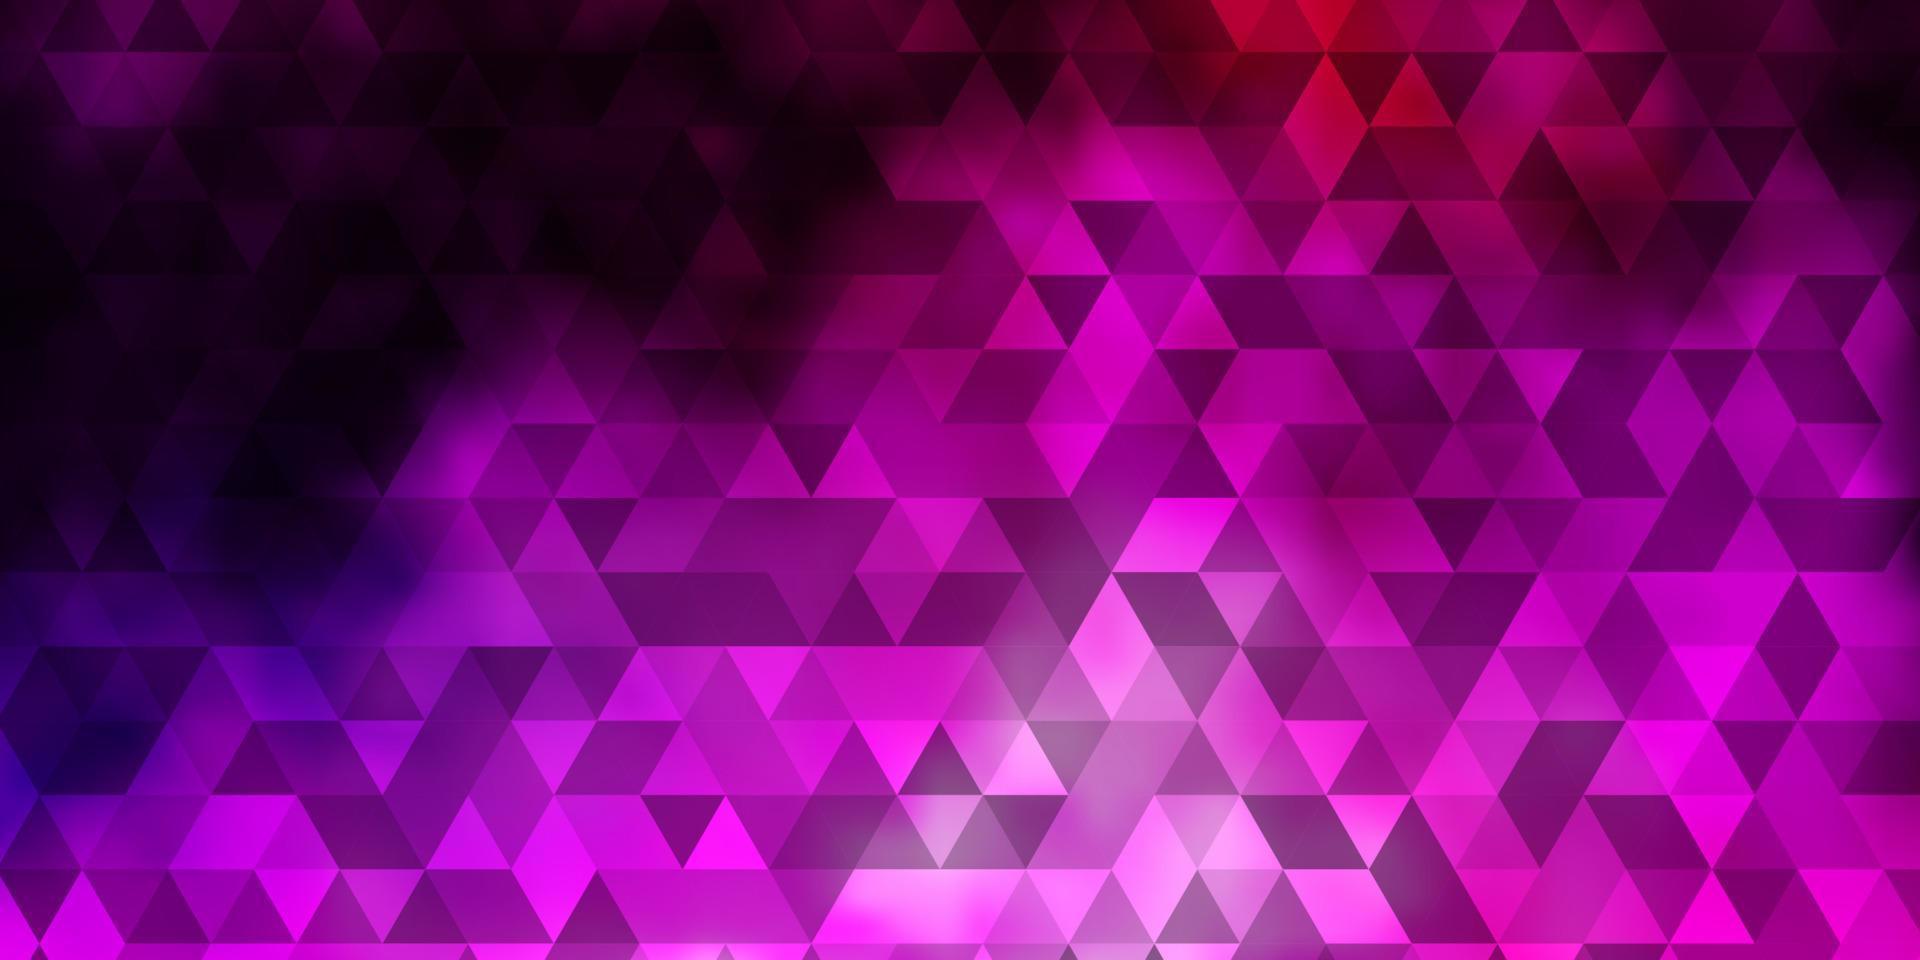 sfondo vettoriale viola chiaro, rosa con stile poligonale.